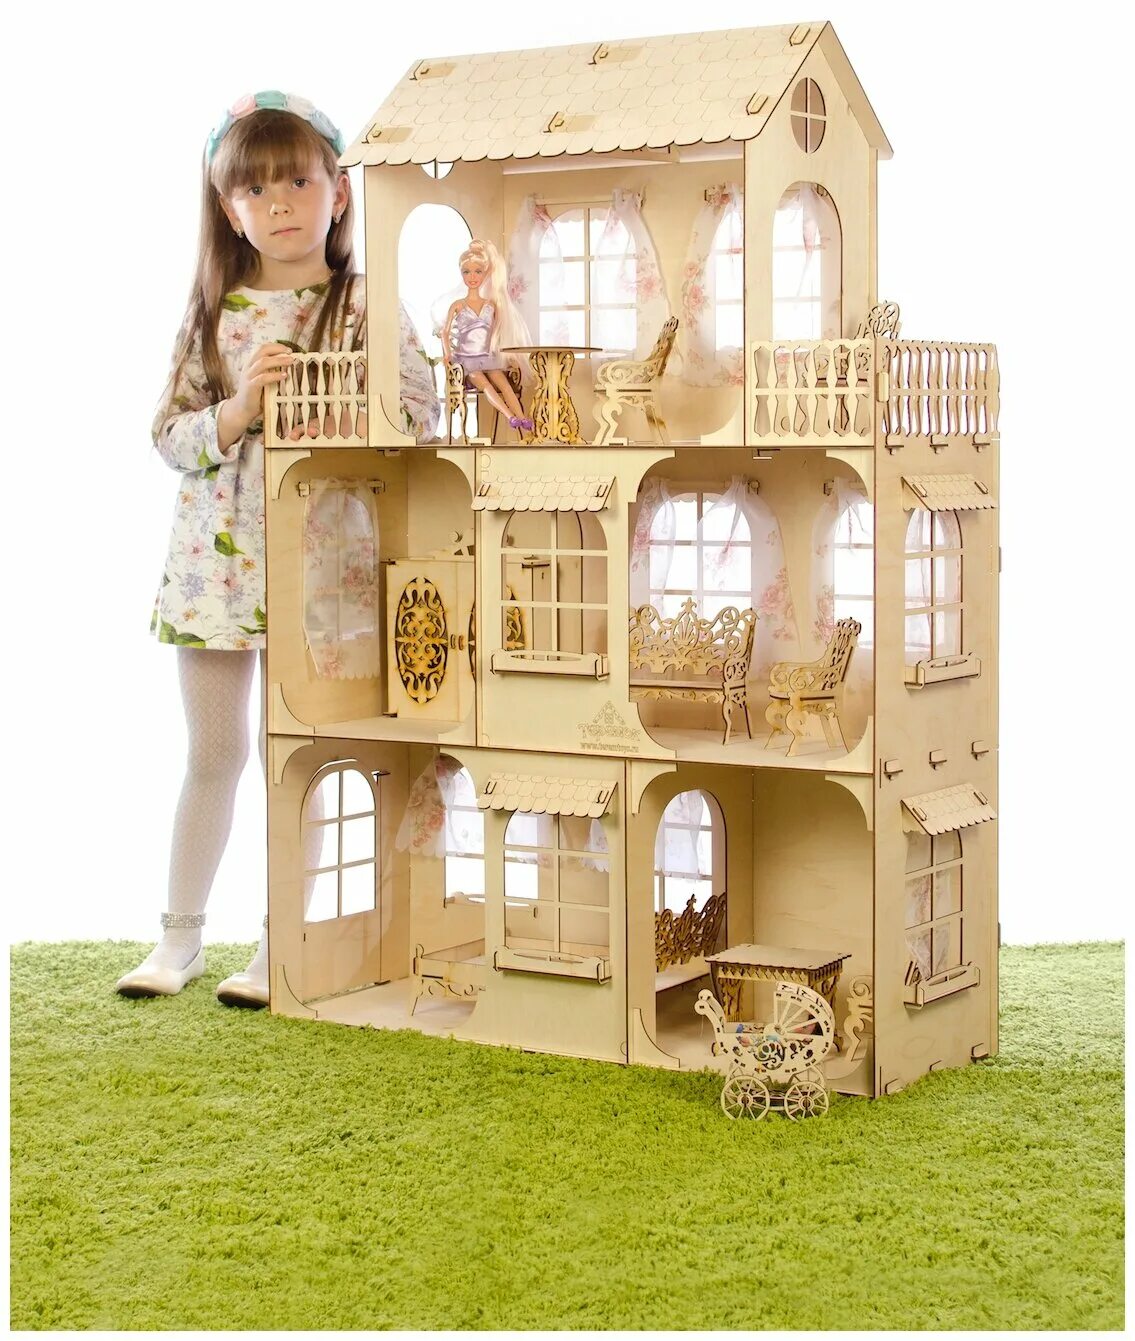 Кукольный домик Теремок кд-1. Barbie кукольный домик "летняя вилла" 76932. Кукольные игрушки купить